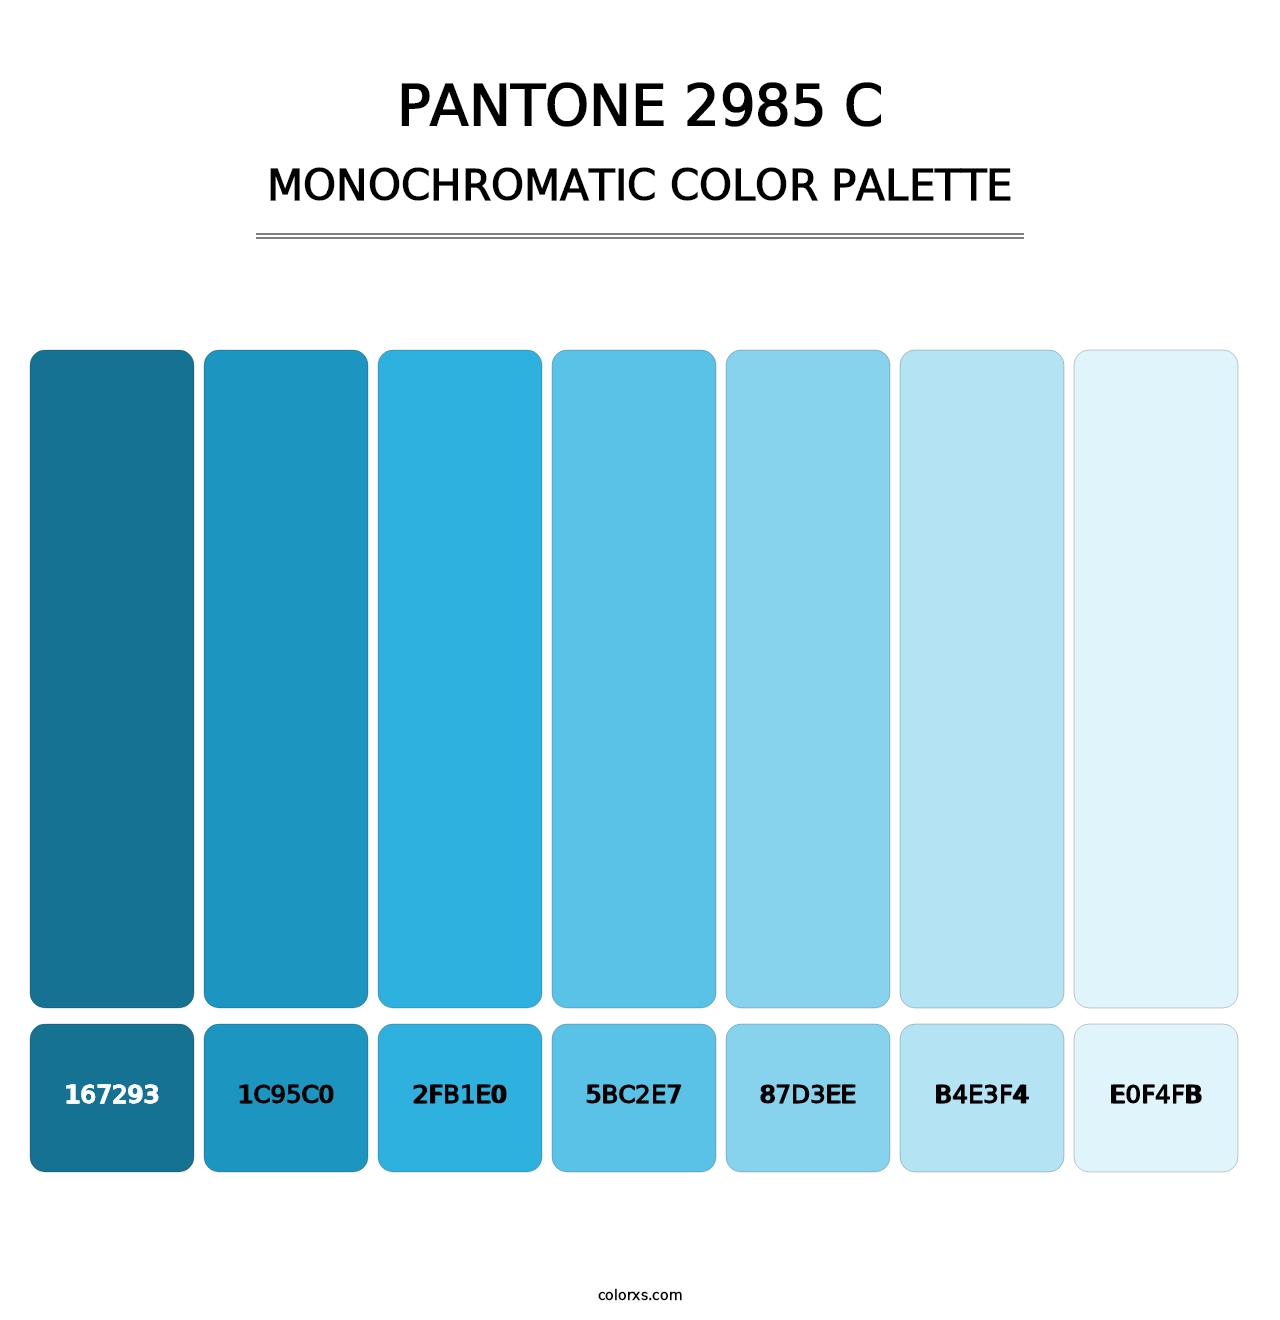 PANTONE 2985 C - Monochromatic Color Palette